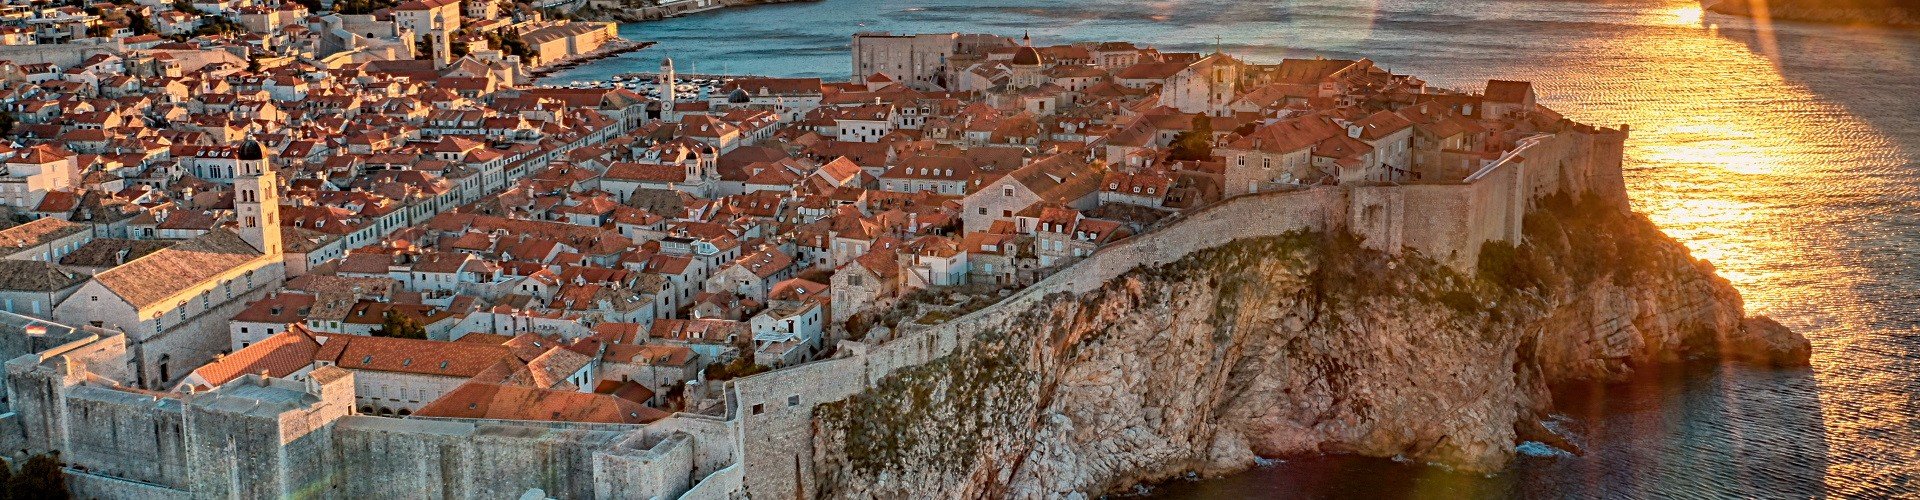 Stadtmauer und Festungsanlagen Dubrovnik